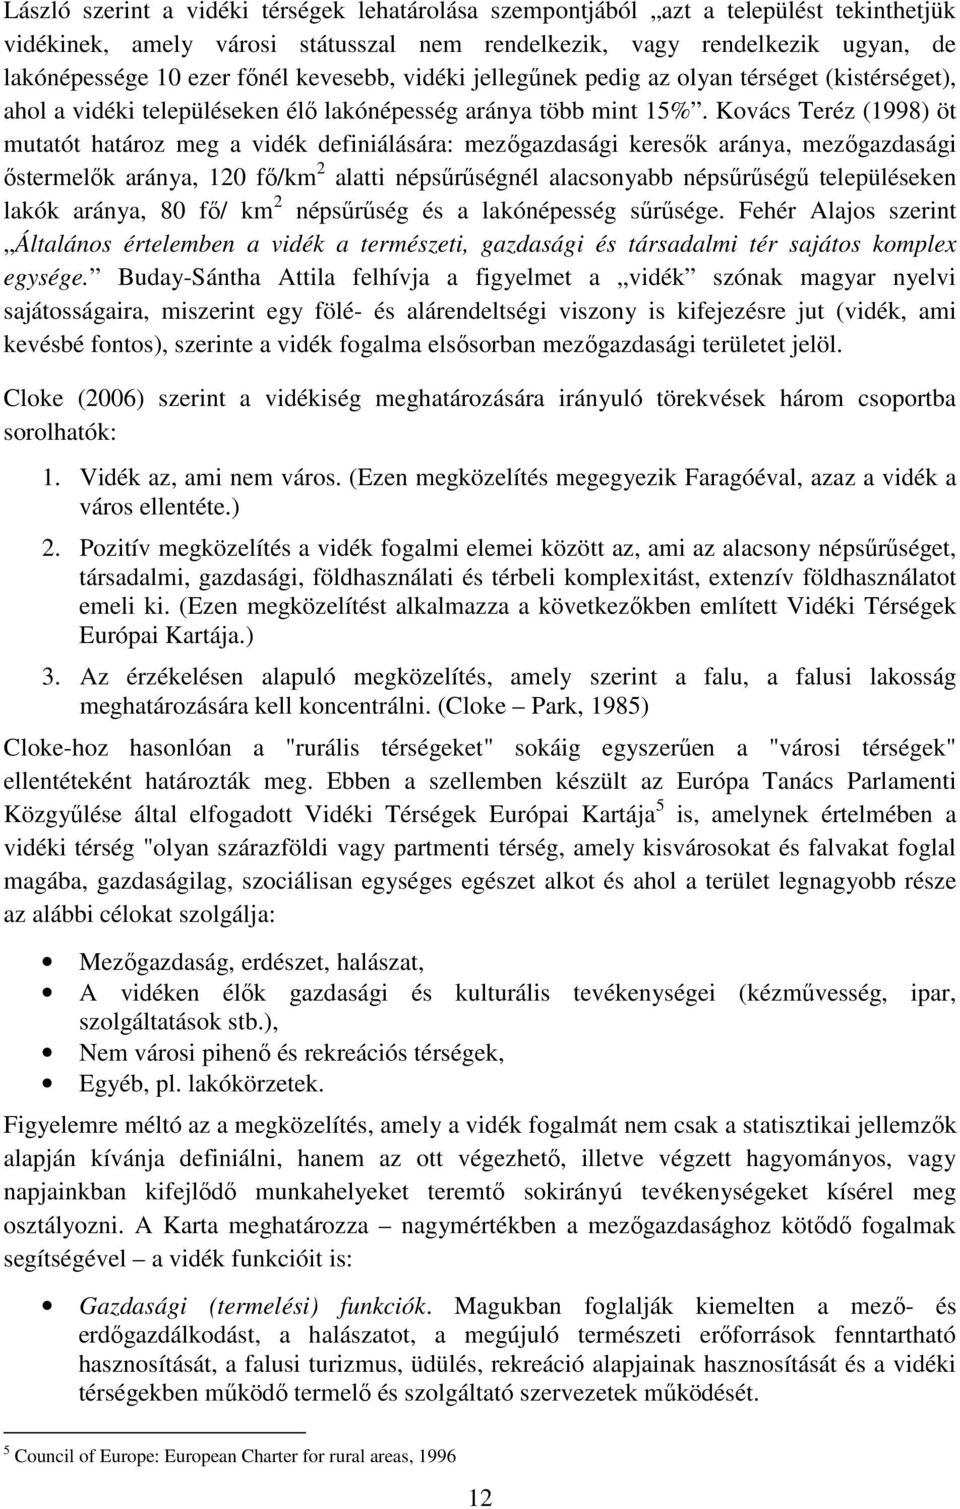 Kovács Teréz (1998) öt mutatót határoz meg a vidék definiálására: mezőgazdasági keresők aránya, mezőgazdasági őstermelők aránya, 120 fő/km 2 alatti népsűrűségnél alacsonyabb népsűrűségű településeken